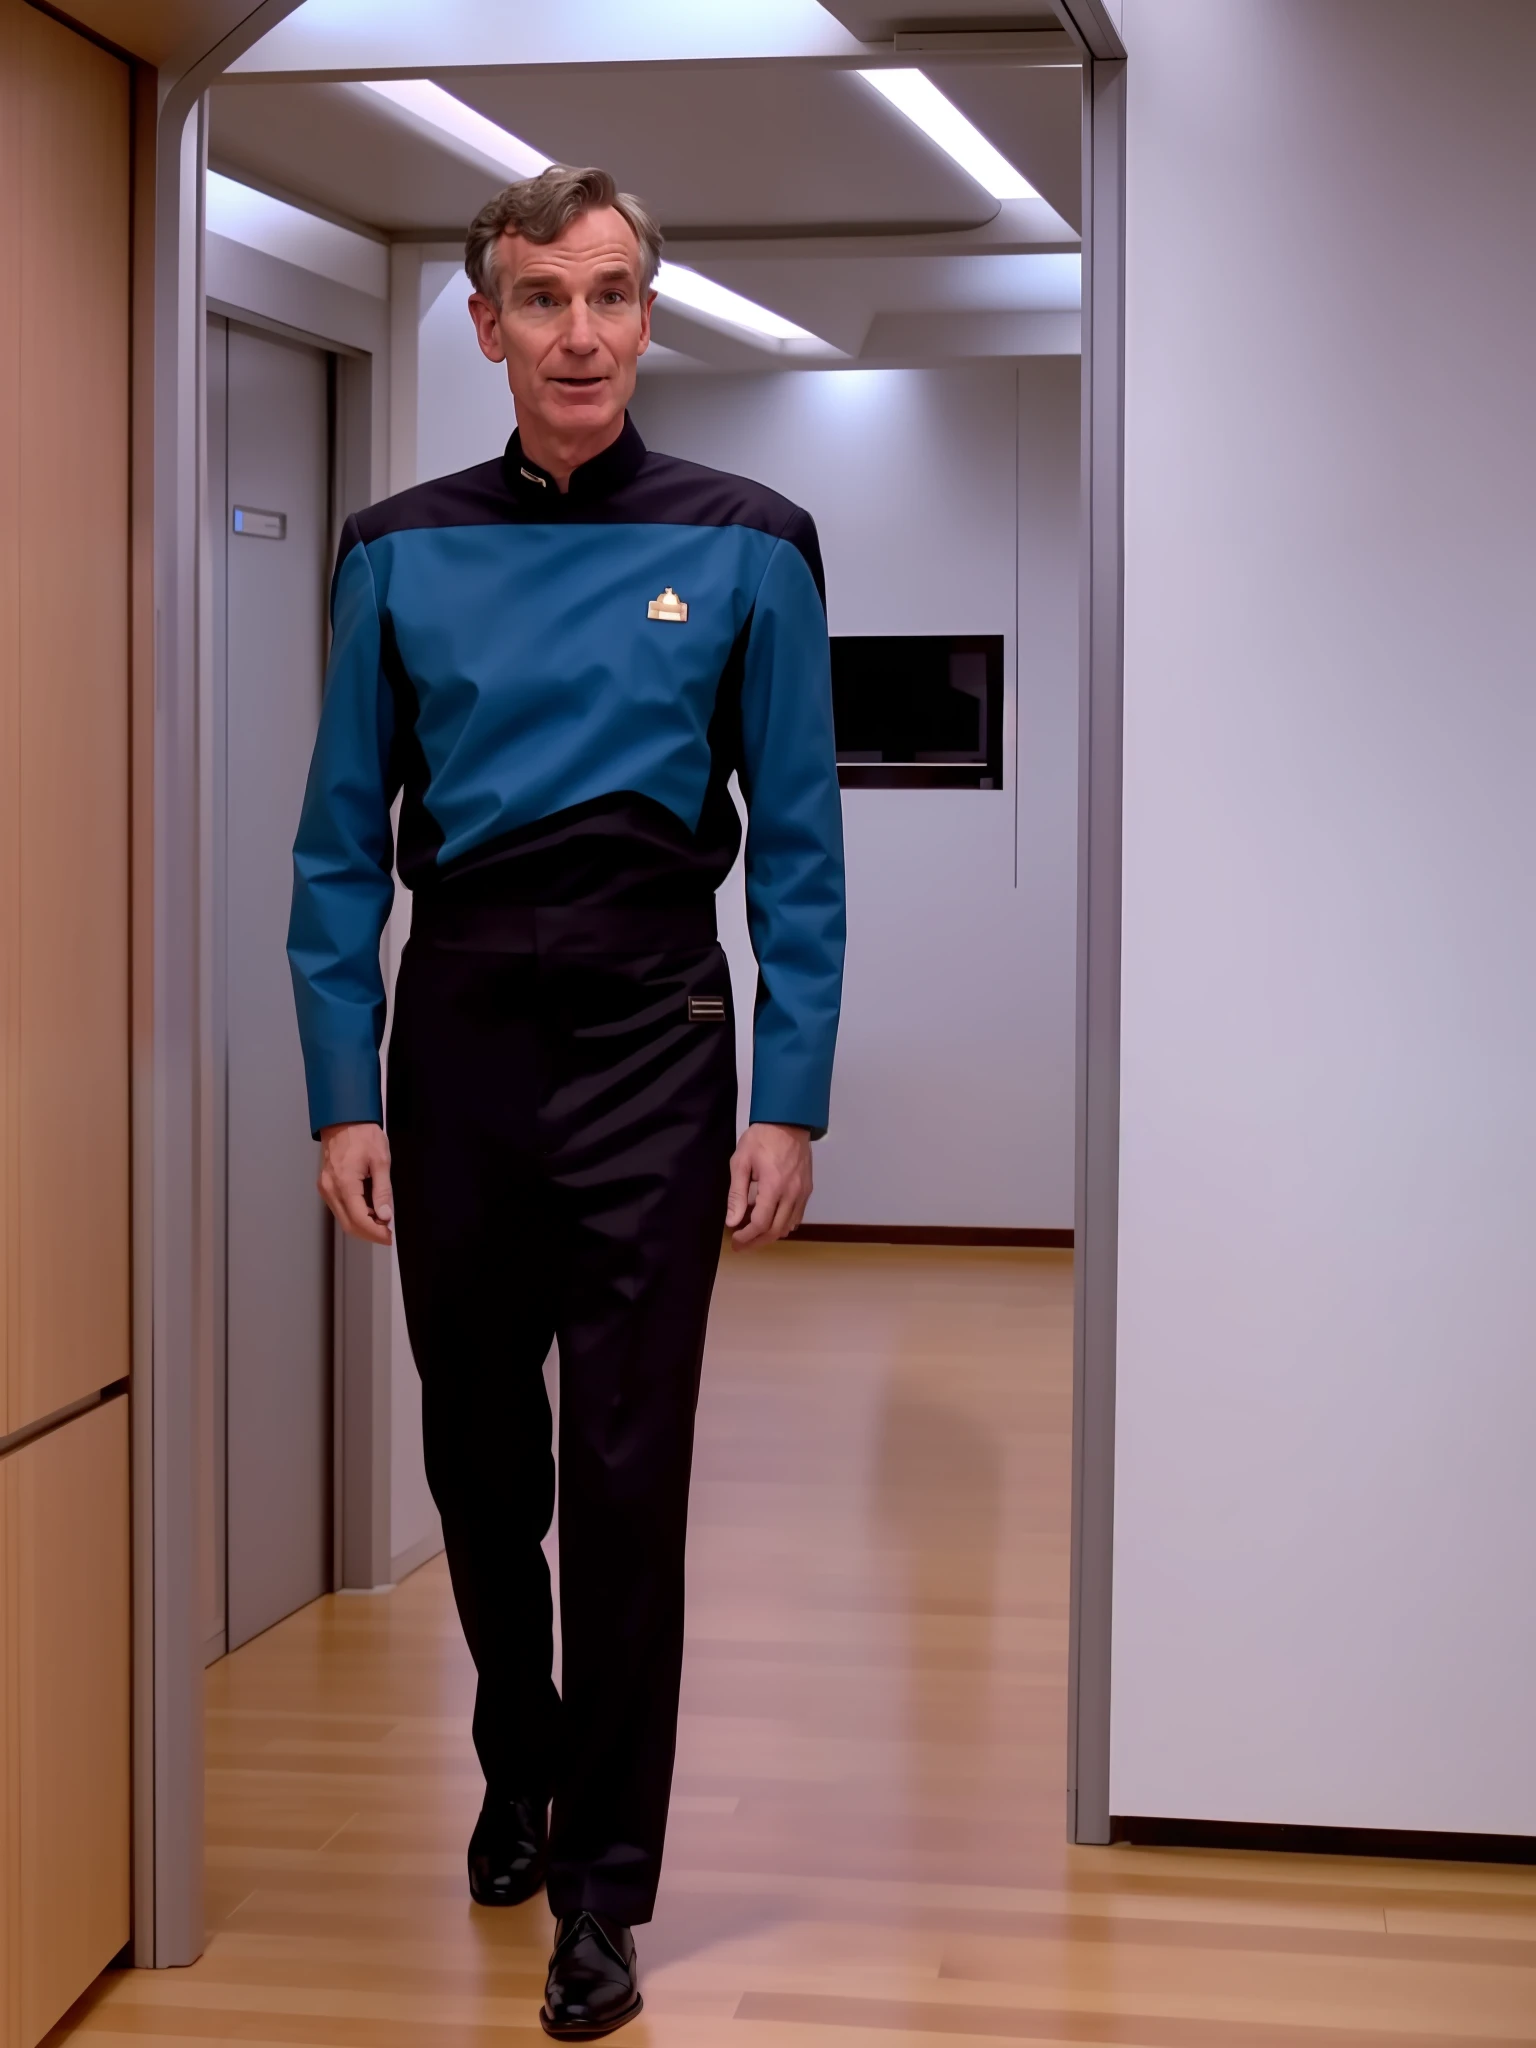 Bill Nye, der Wissenschaftstyp in einer S3sttngsuit-Uniform, 8k uhd, dslr, sanfte Beleuchtung, gute Qualität, Filmkorn, sehr detailliertes Gesicht,Extrem detailliert,Meisterhafte Qualität,Fujifilm XT3